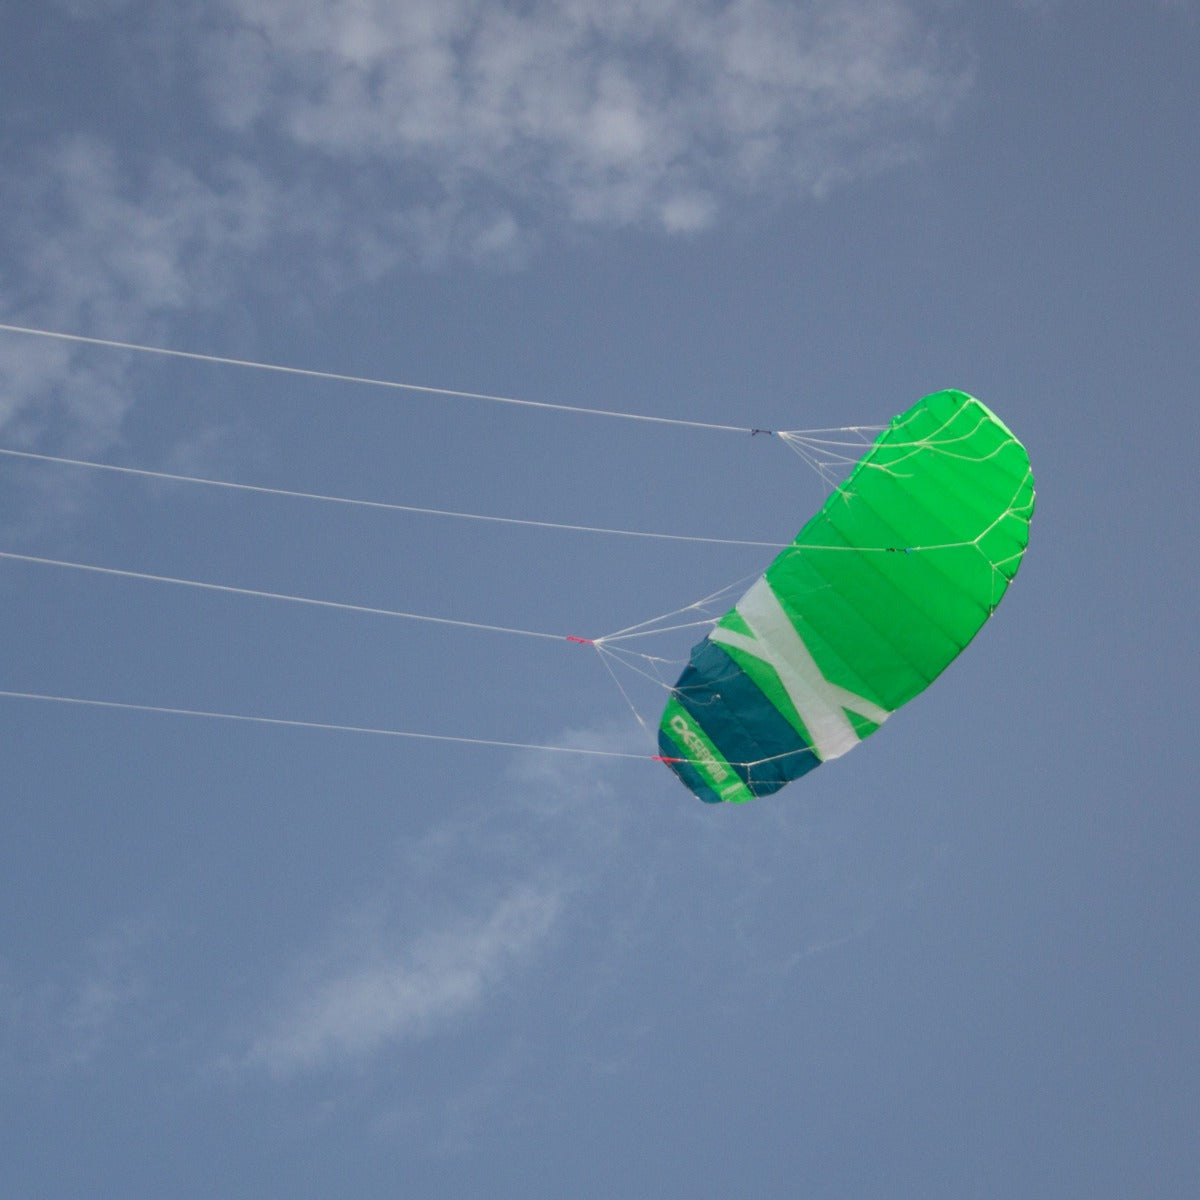 CrossKites Quattro 1.5 Green Lenkmatte Vierleiner Lenkdrachen Kite Flugdrachen R2F